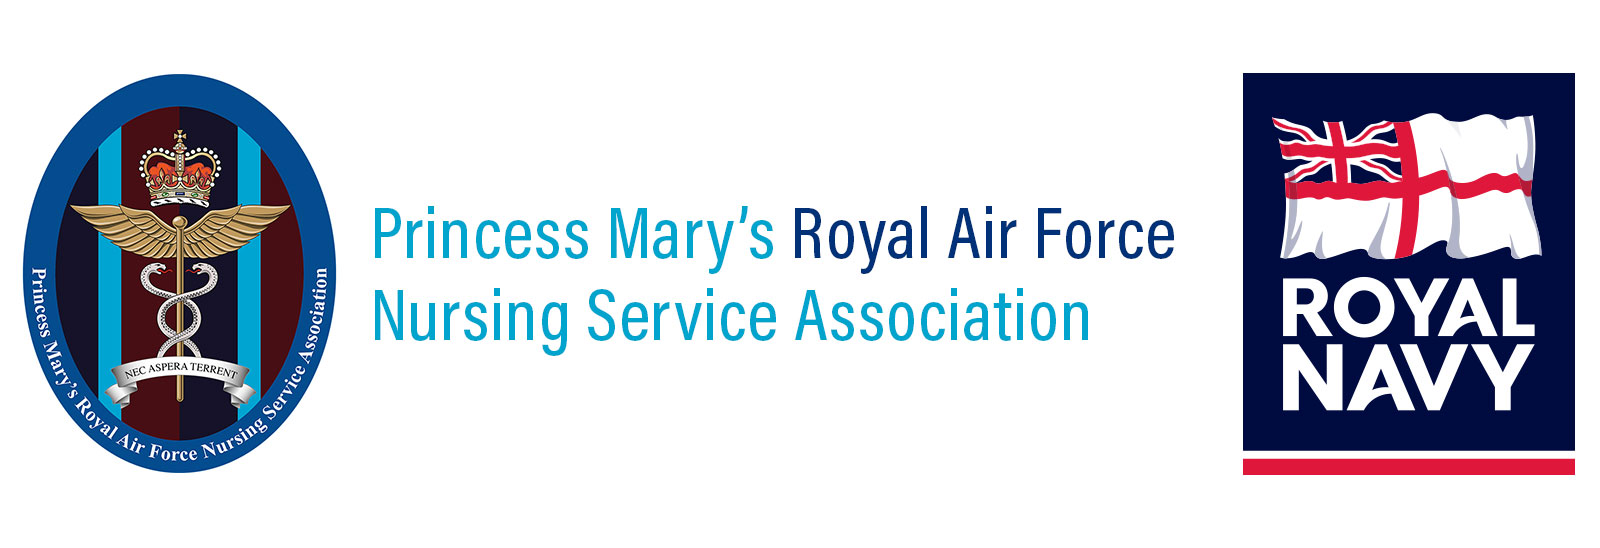 princess mary's royal air force nursing association and royal navy emblems